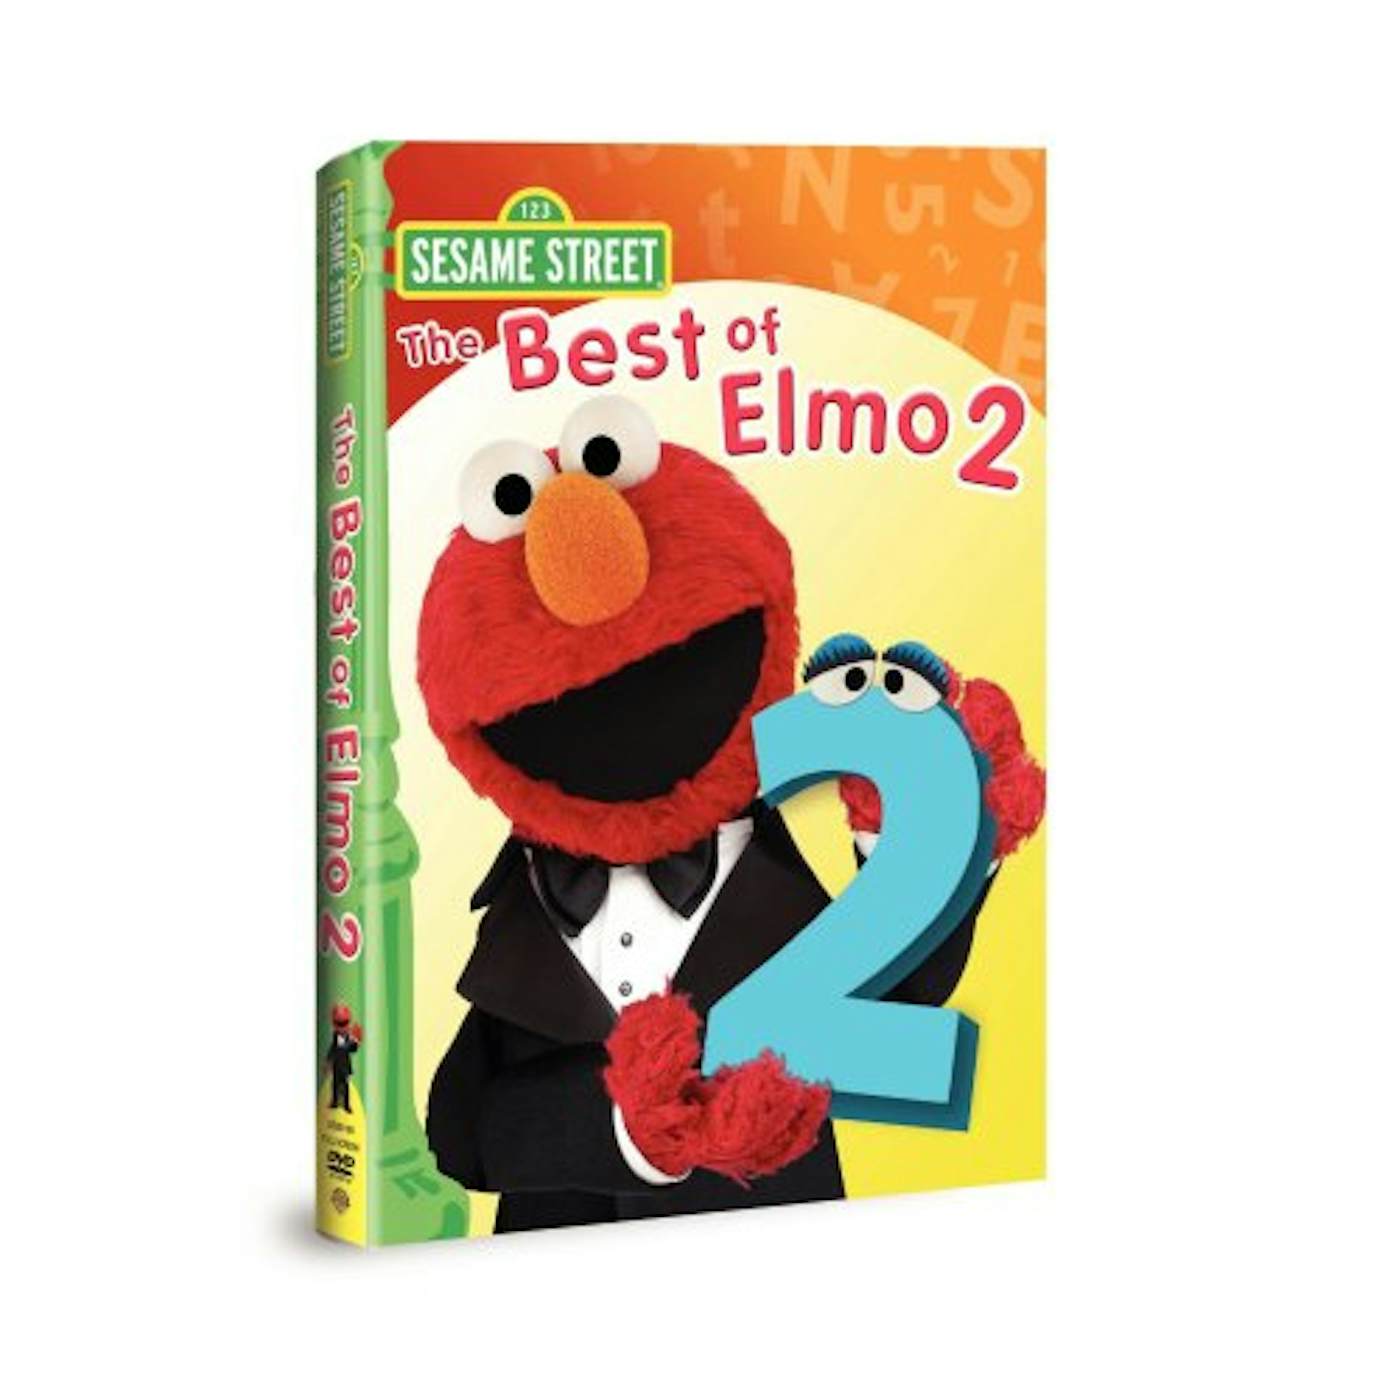 Sesame Street BEST OF ELMO 2 DVD